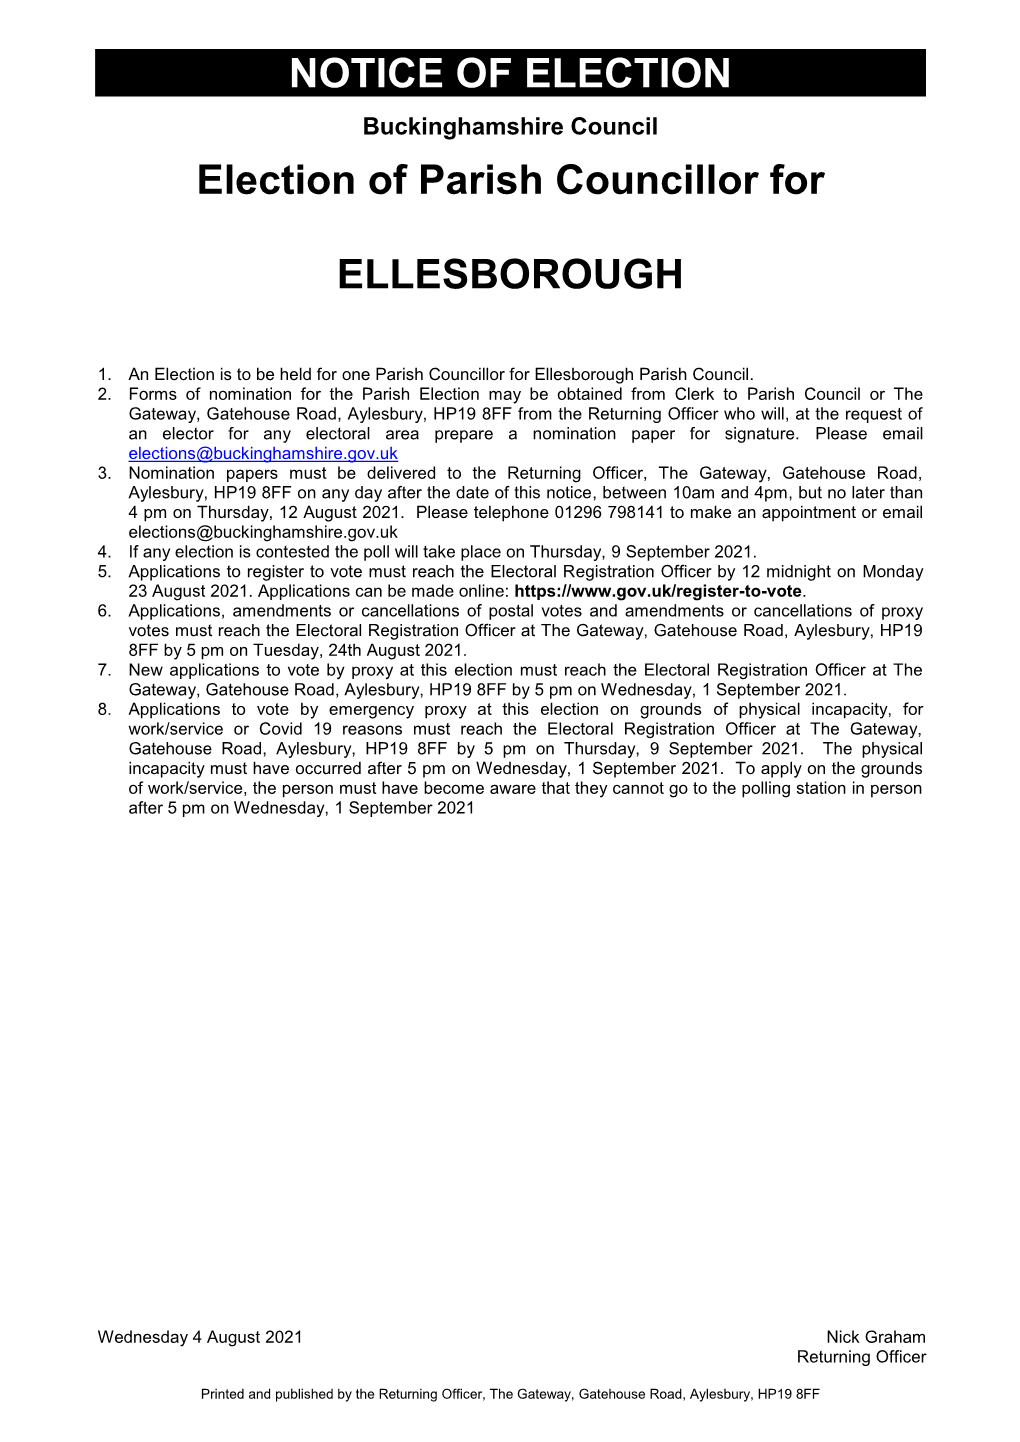 Ellesborough Parish Council By-Election Notice of Election